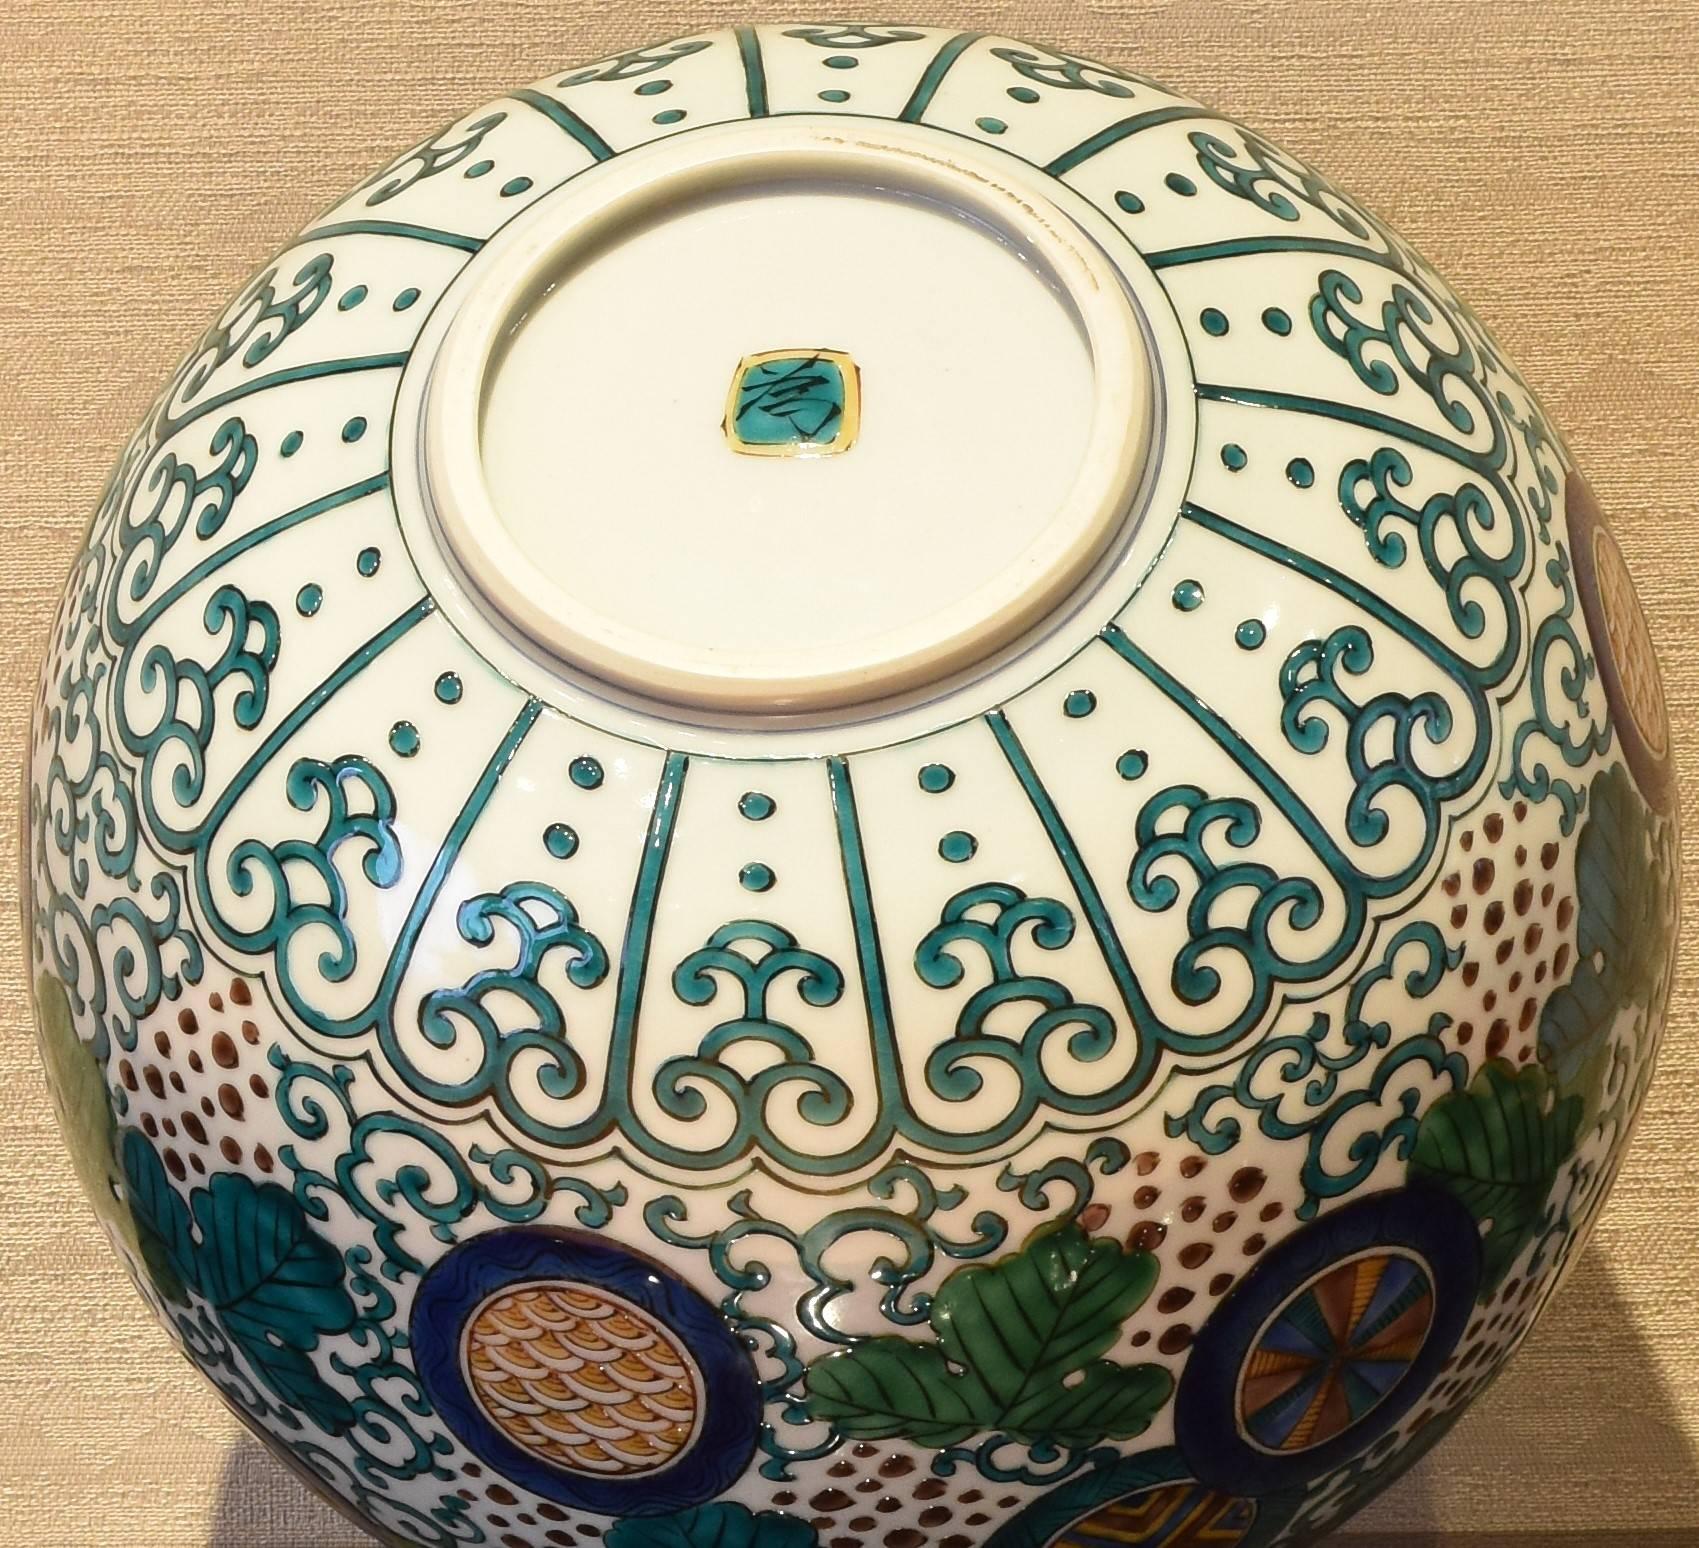 Japanese Kutani Decorative Porcelain Vase by Master Artist 1